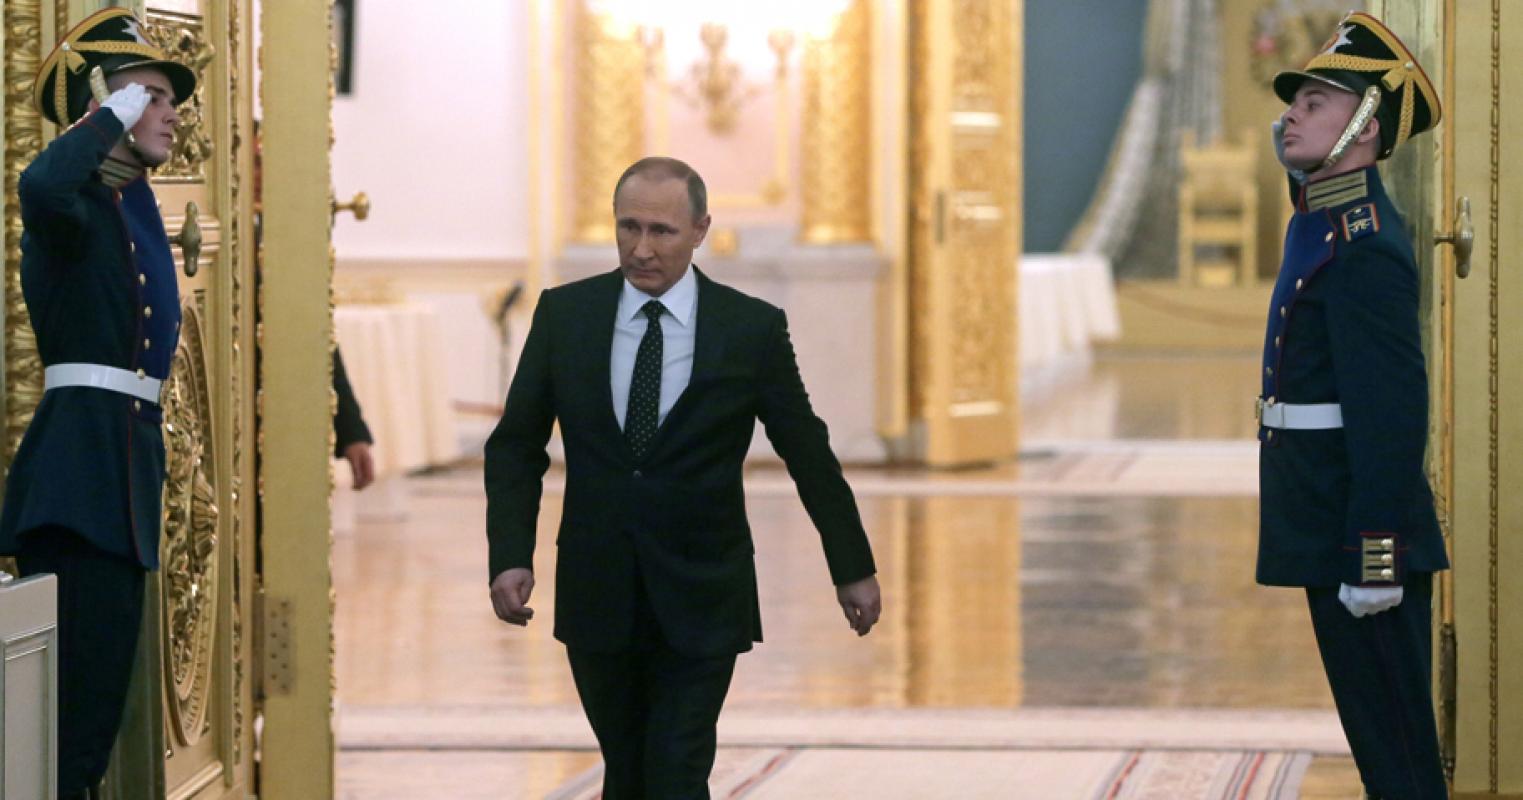 Putinas Rusijoje vykdo bekraujį elito valymą / Путин проводит бескровную чистку элиты в России